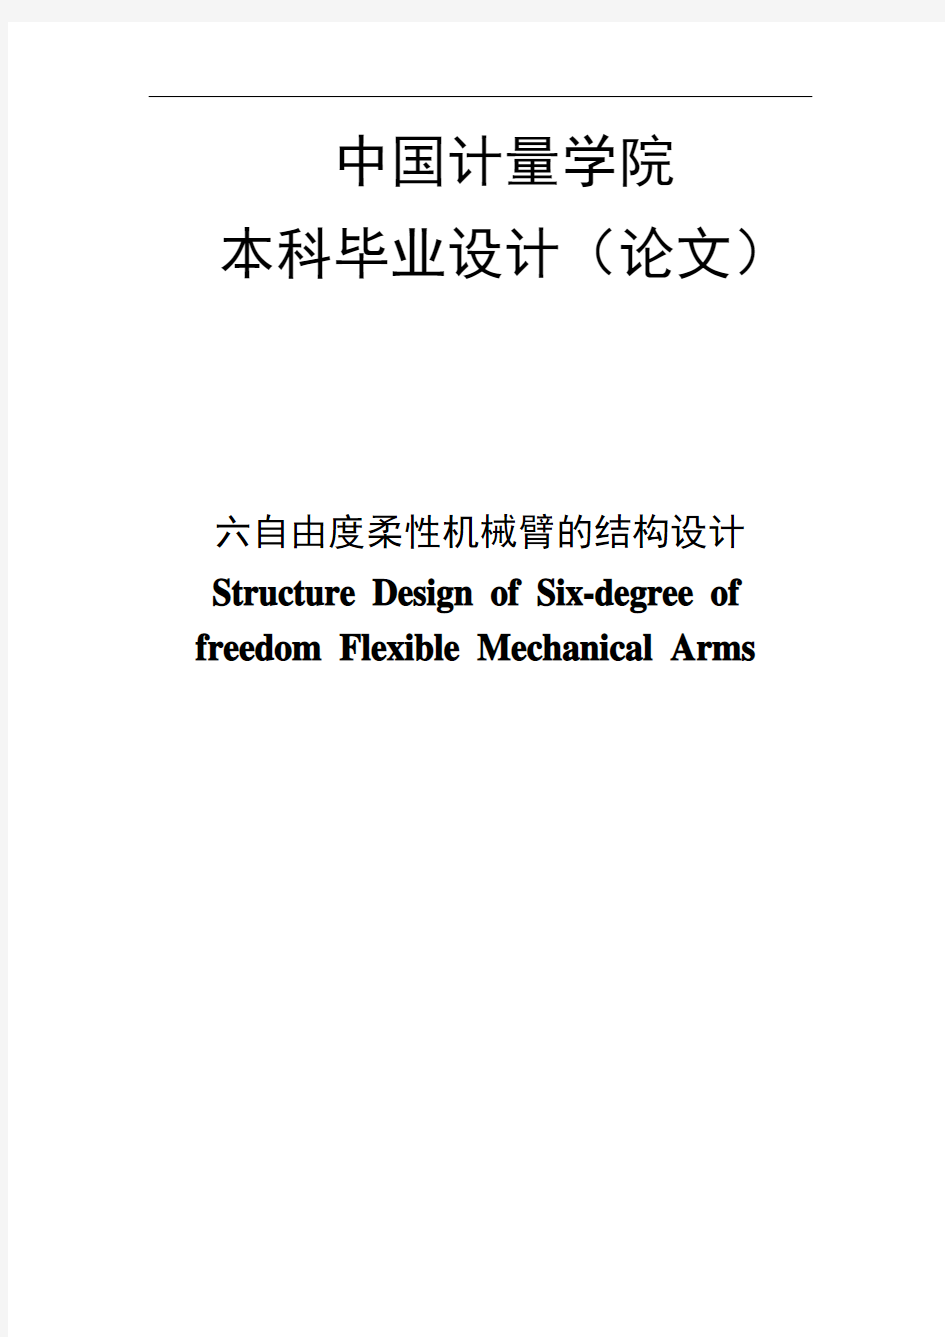 六自由度柔性机械臂的结构设计毕业设计论文